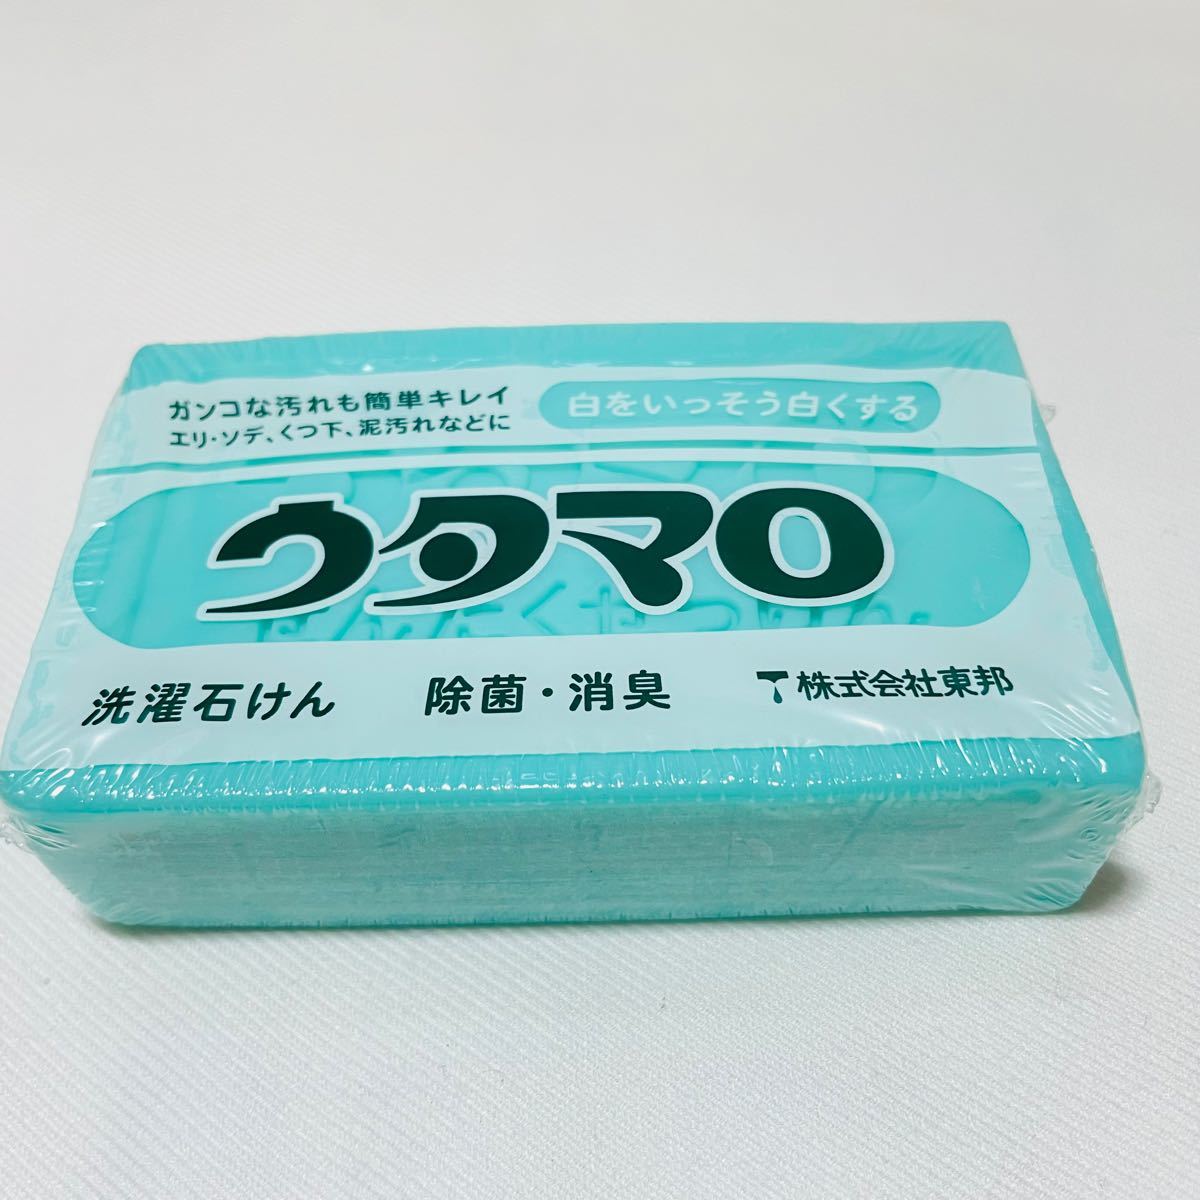 【匿名発送】 新品 ウタマロ 石鹸 133g × 7個 セット 洗濯用 石けん まとめ売り 東邦 